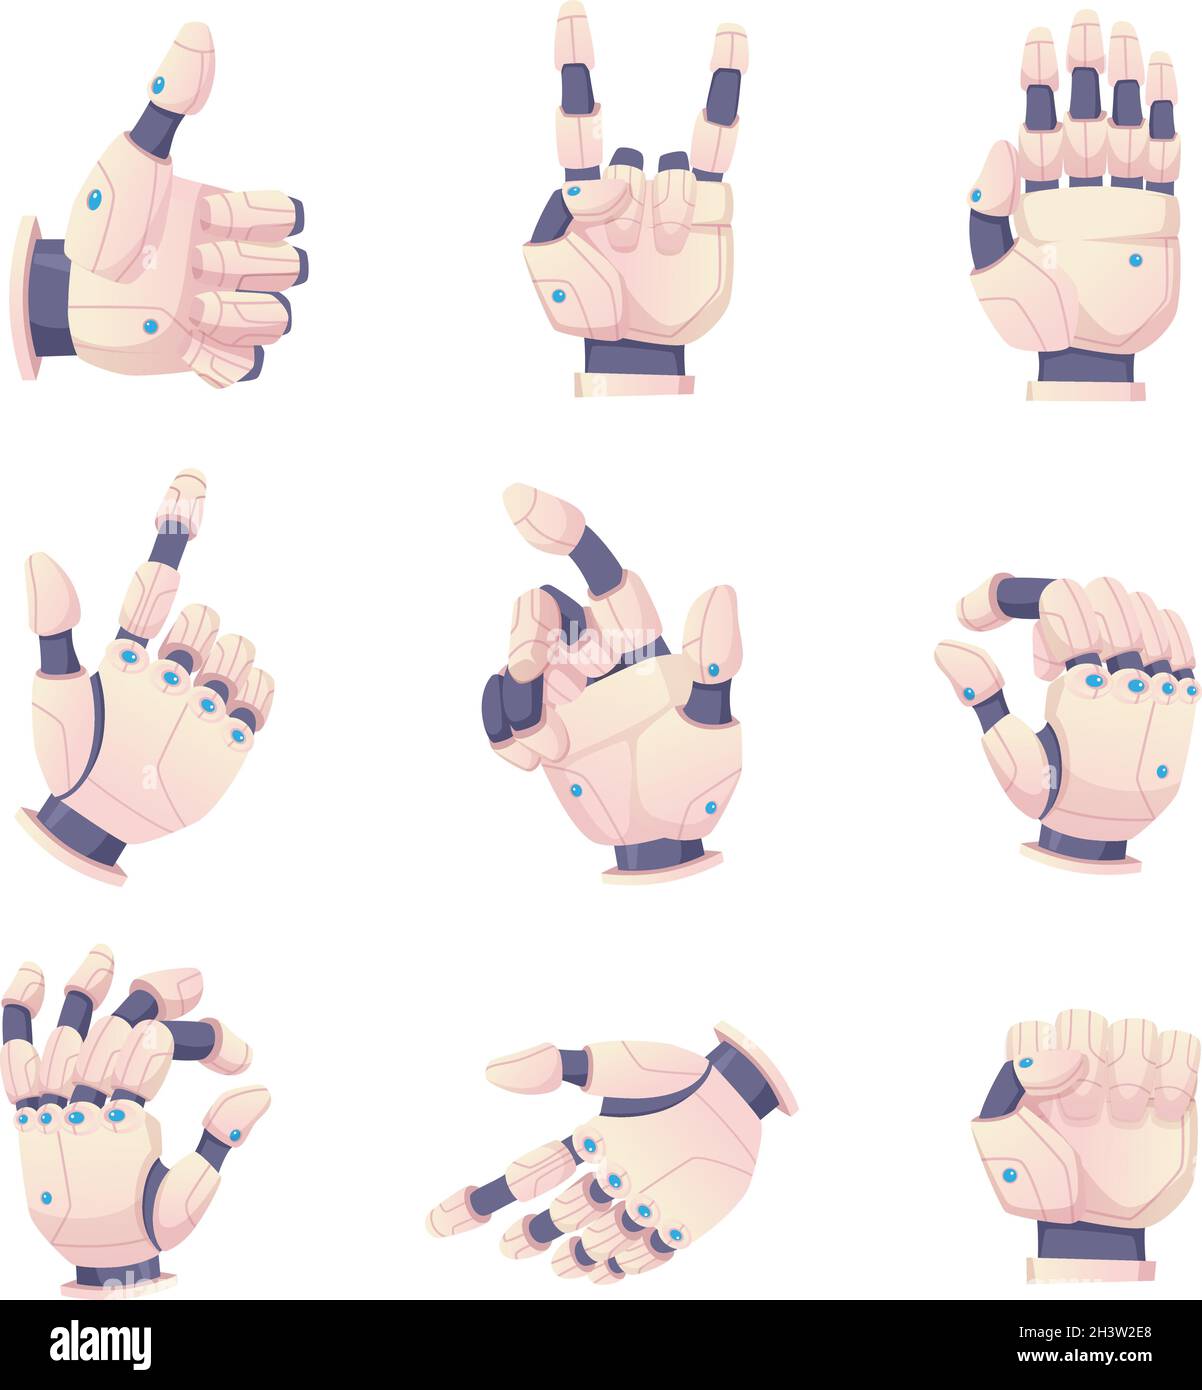 Bionic human hands. Robots gestures helping prosthesis vector set Stock Vector